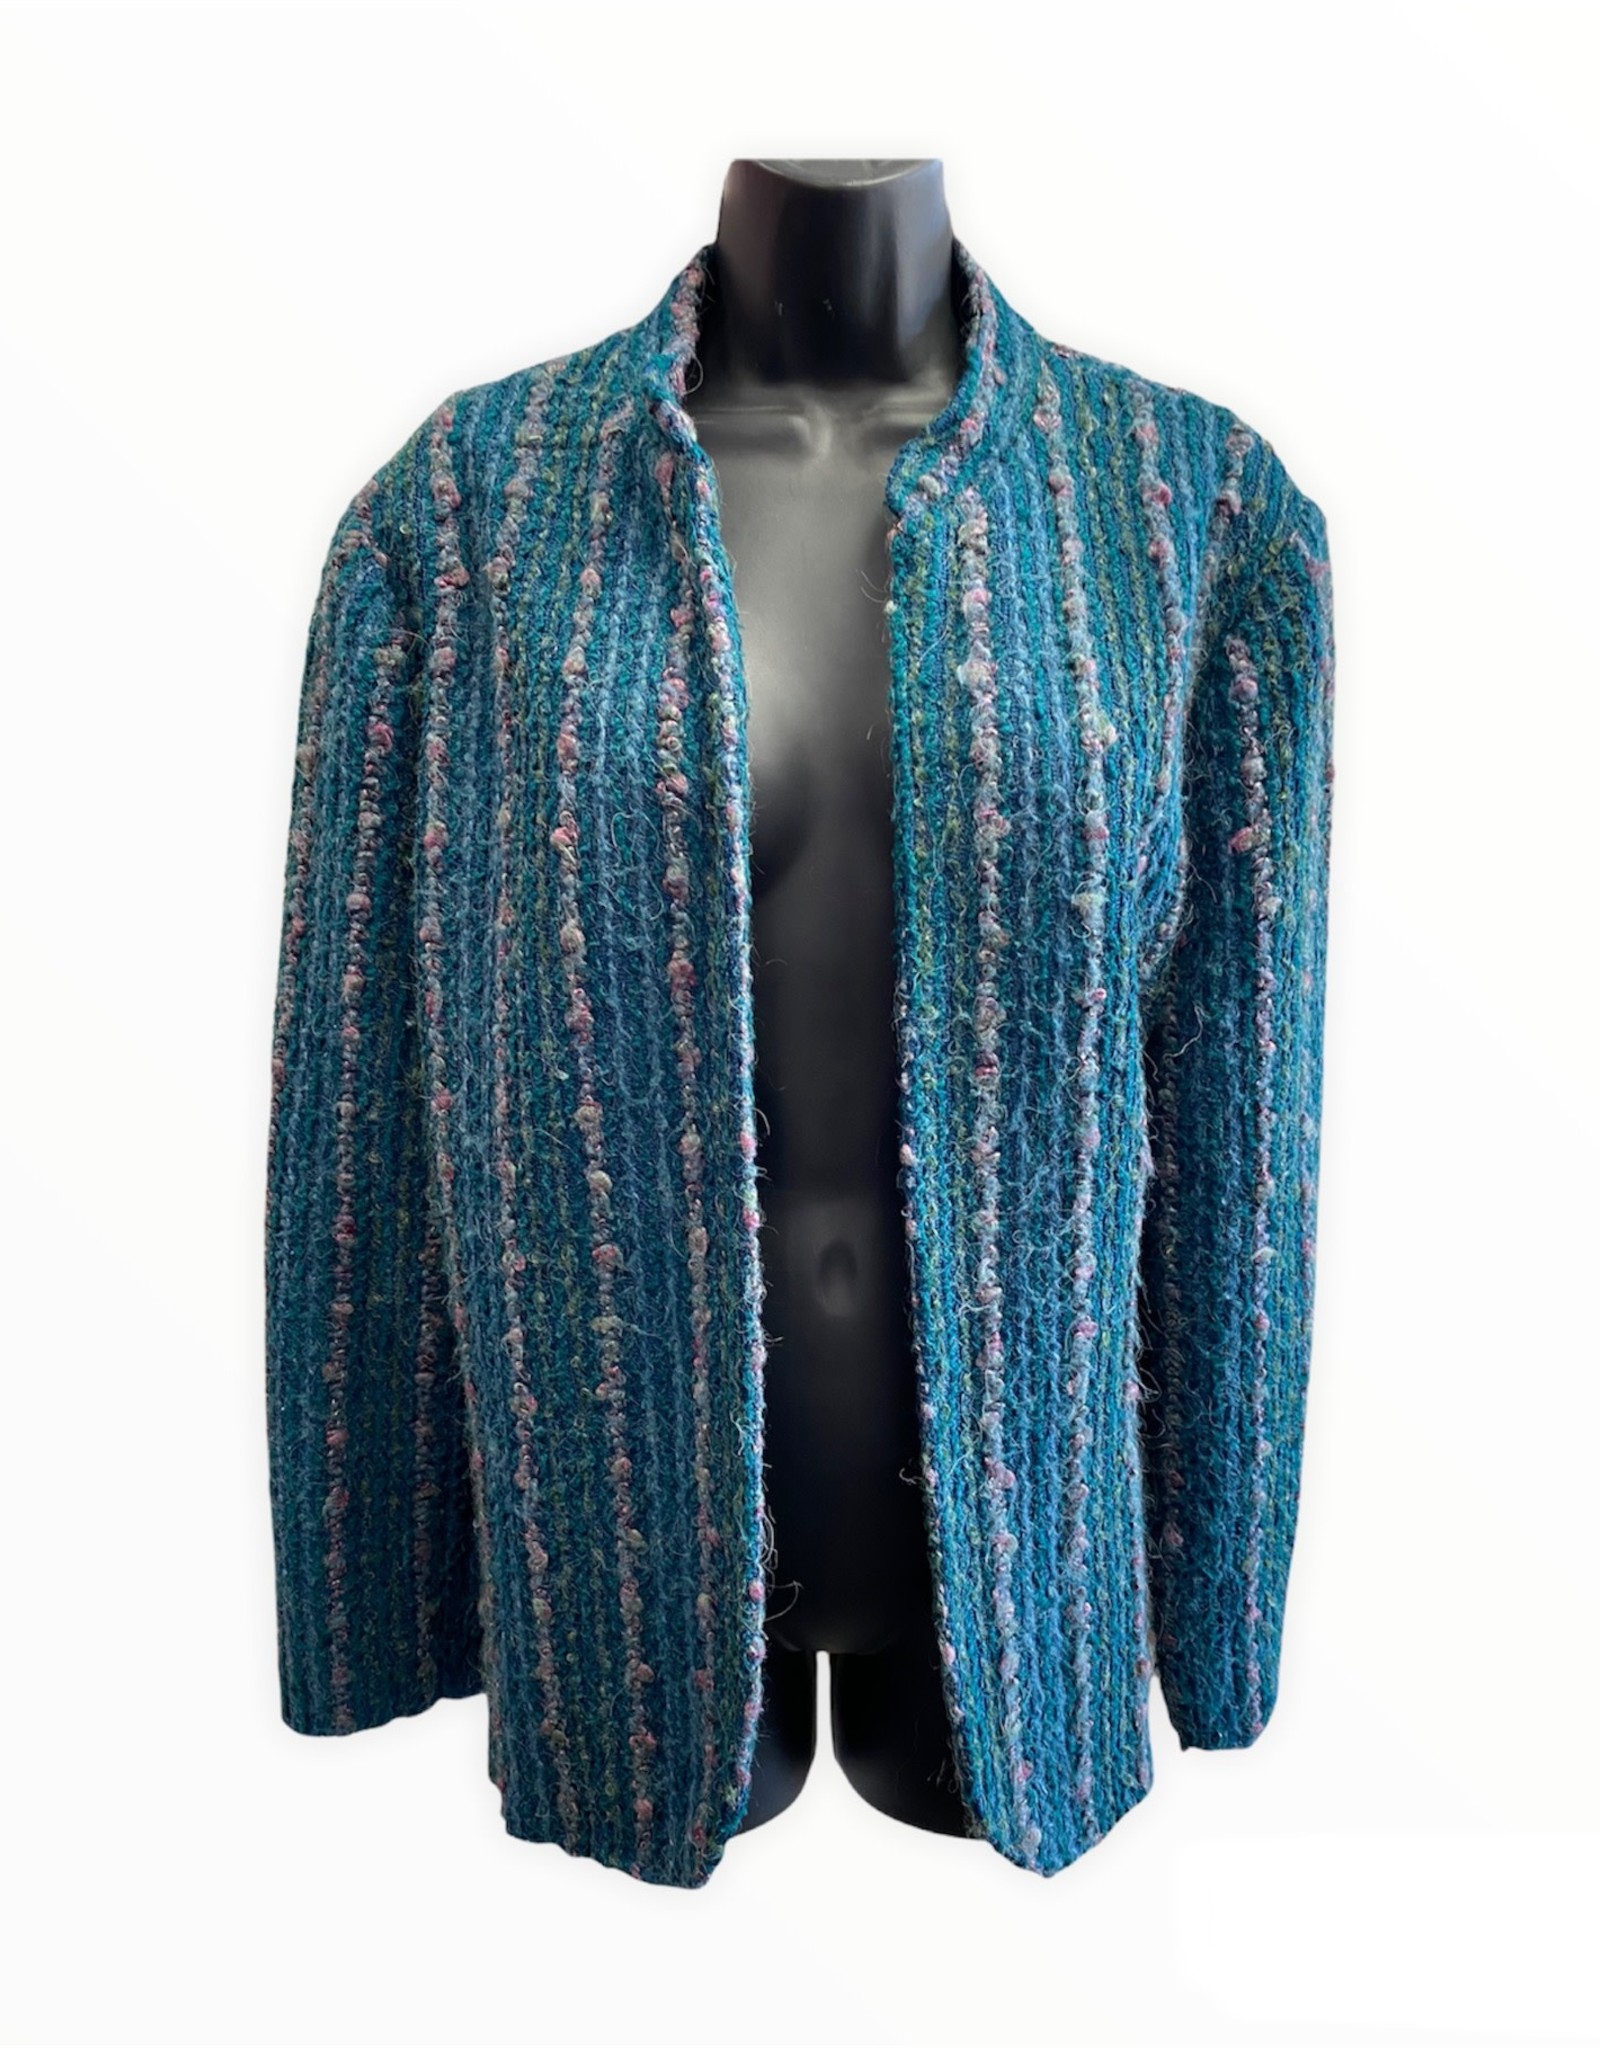 80s Knit jacket teal w/stripes